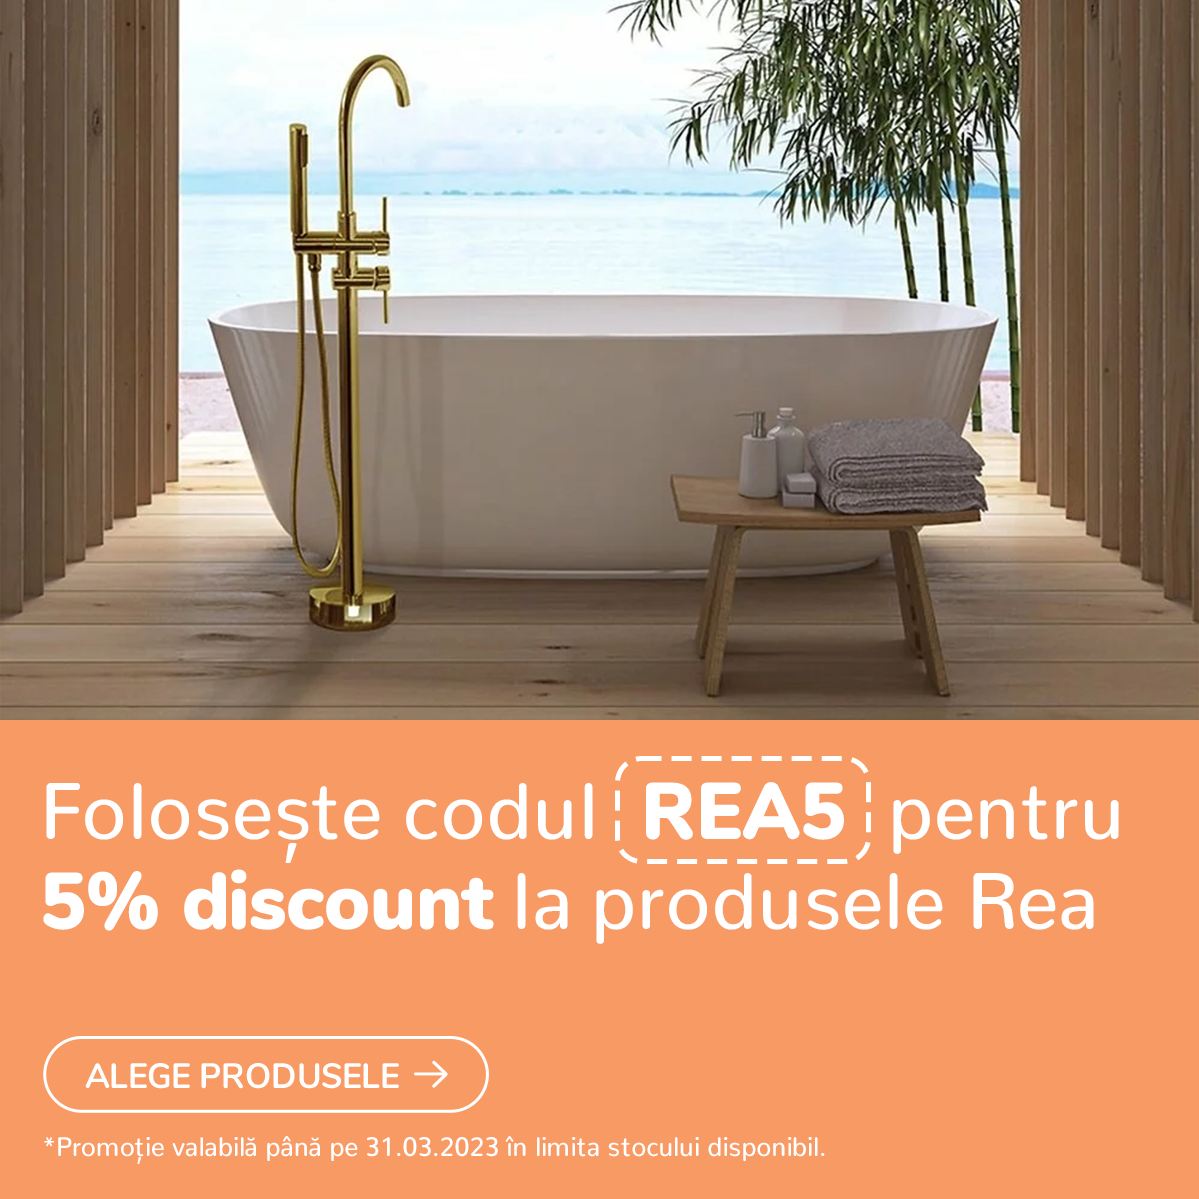 Foloseste codul REA5 pentru -5% reducere la produs